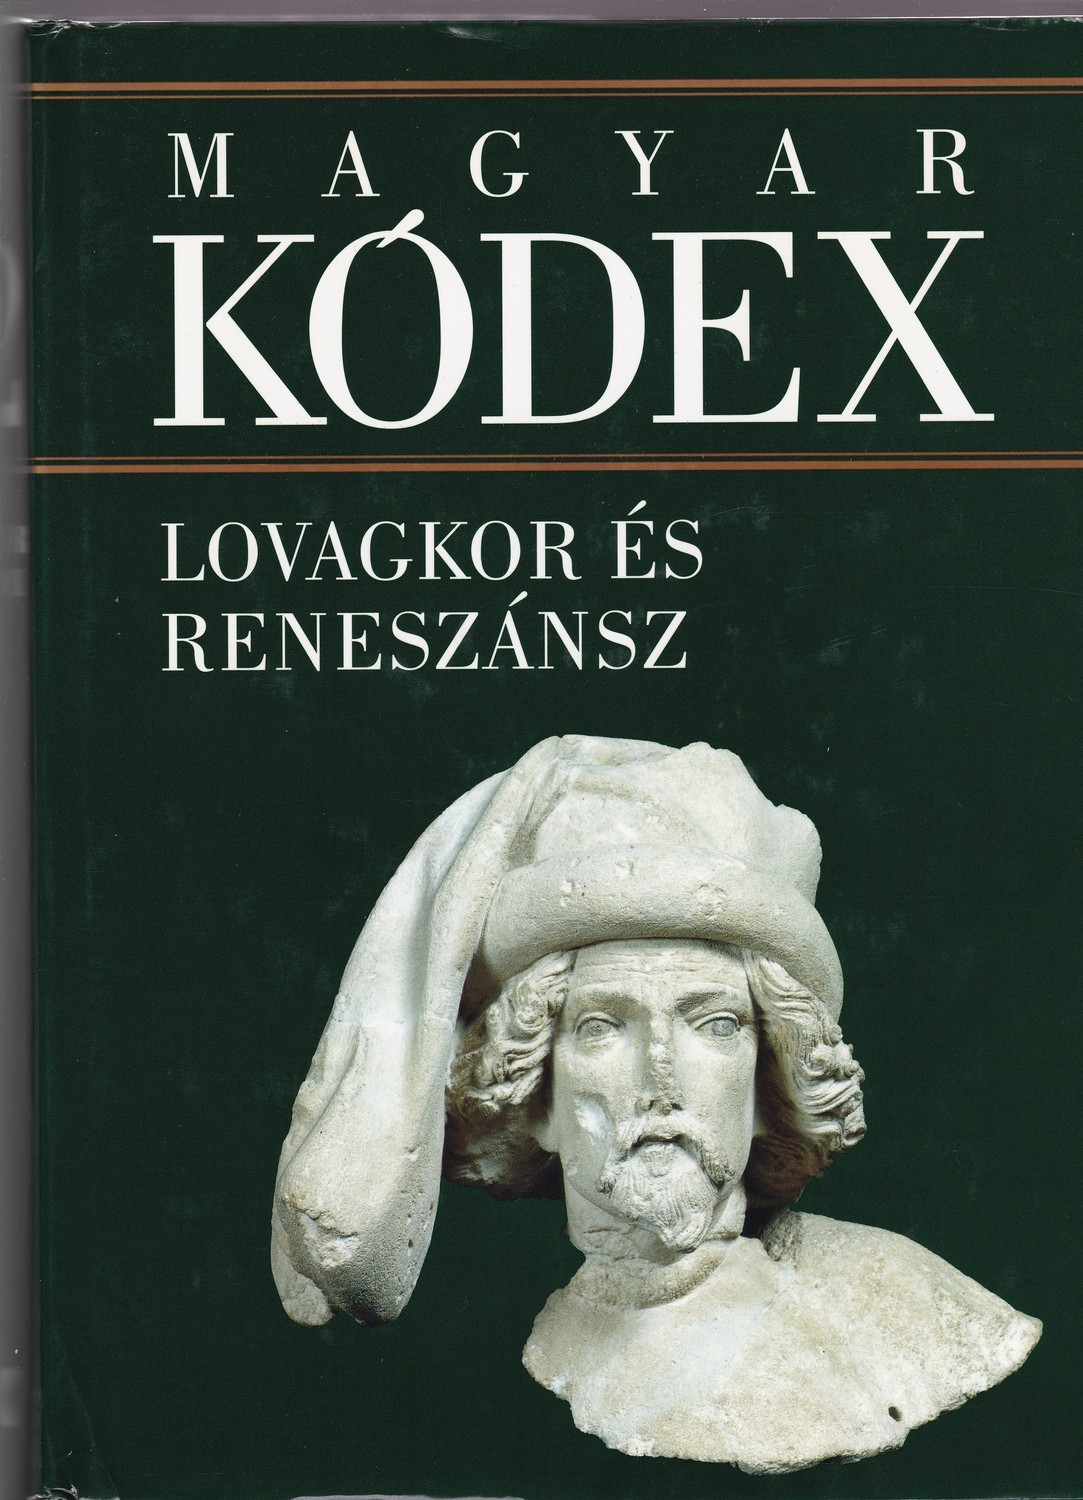 Magyar kódex 2. kötet: Lovagkor és reneszánsz. Magyarország művelődéstörténete 1301-1526 (Rippl-Rónai Múzeum CC BY-NC-ND)